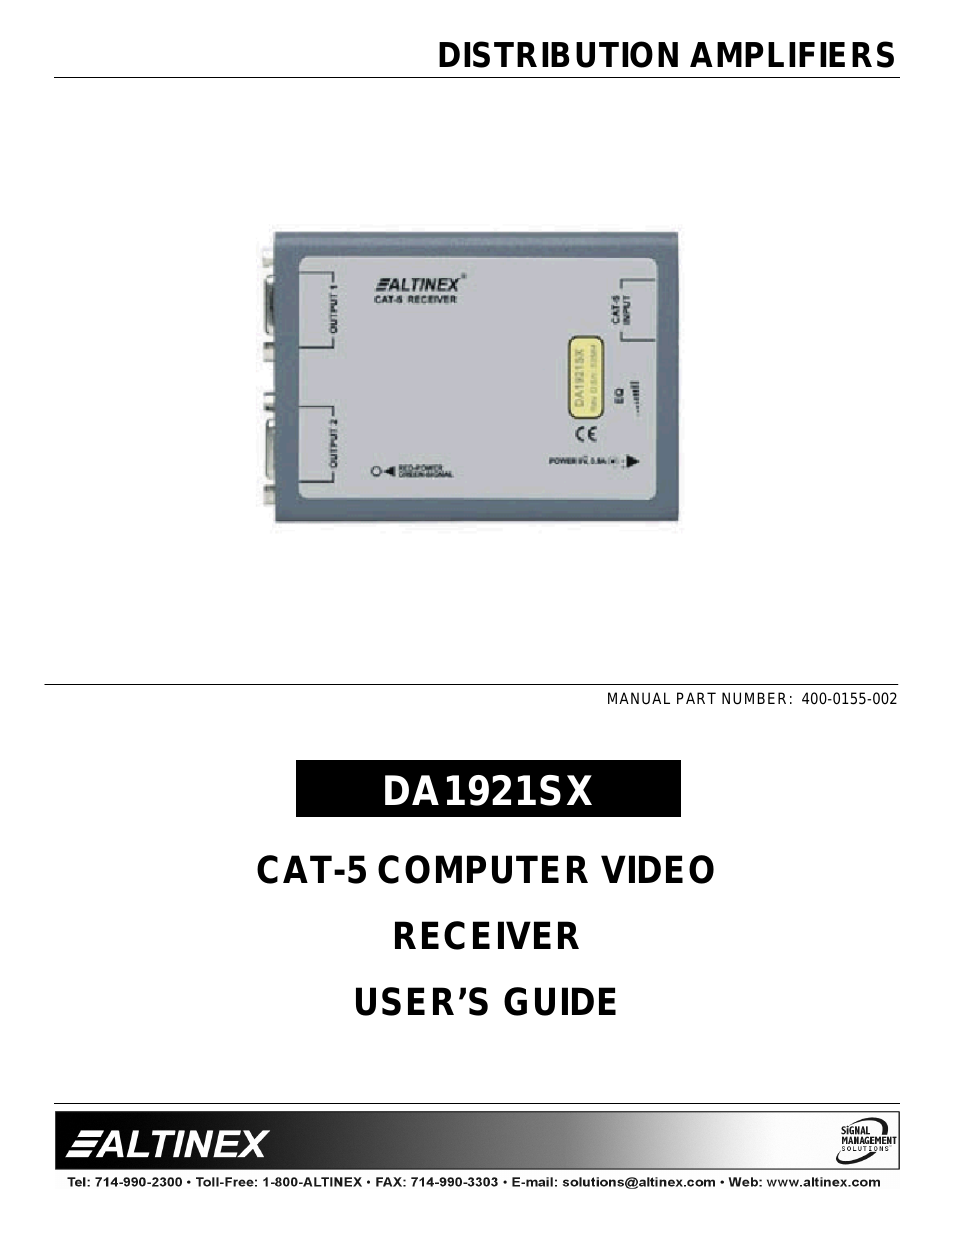 Cat-5 Computer Video Receiver DA1921SX